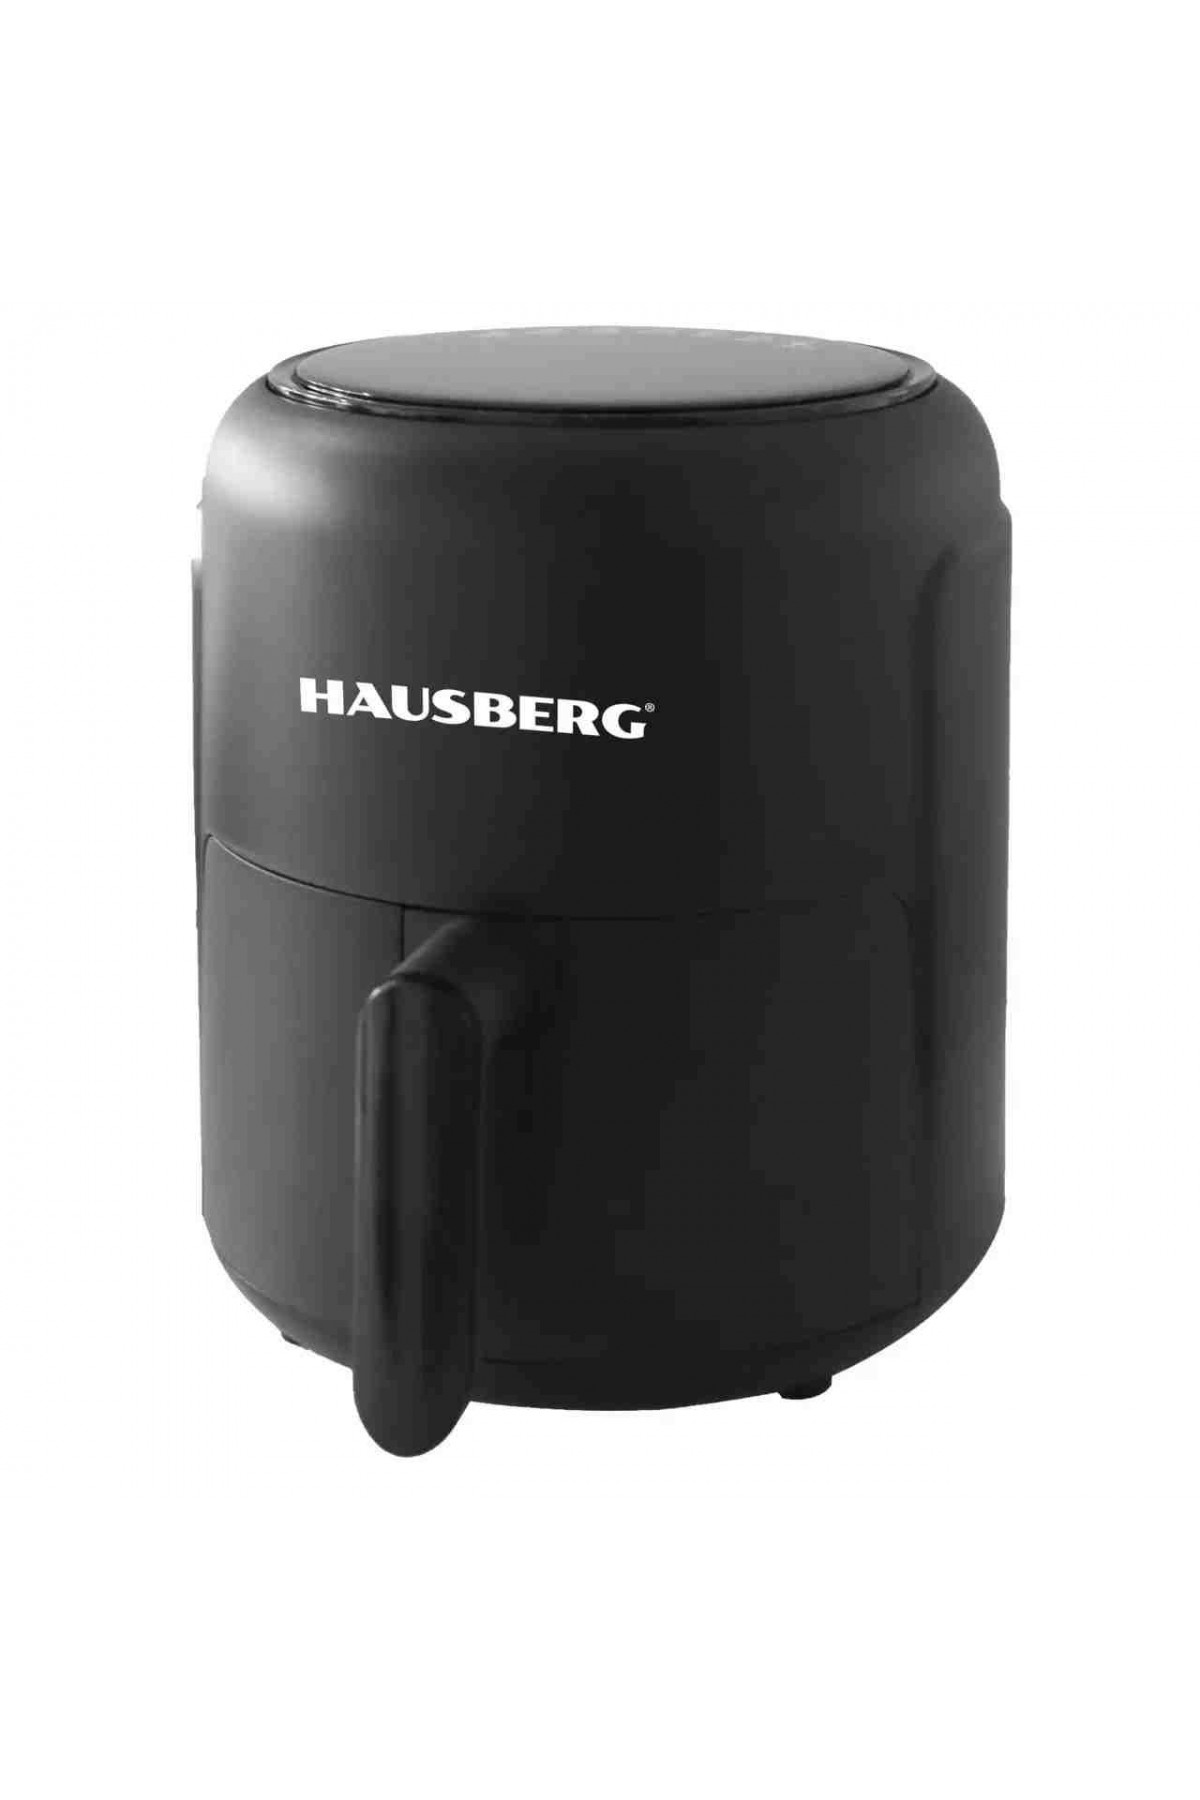 HAUSBERG HB-2356 Airfryer 